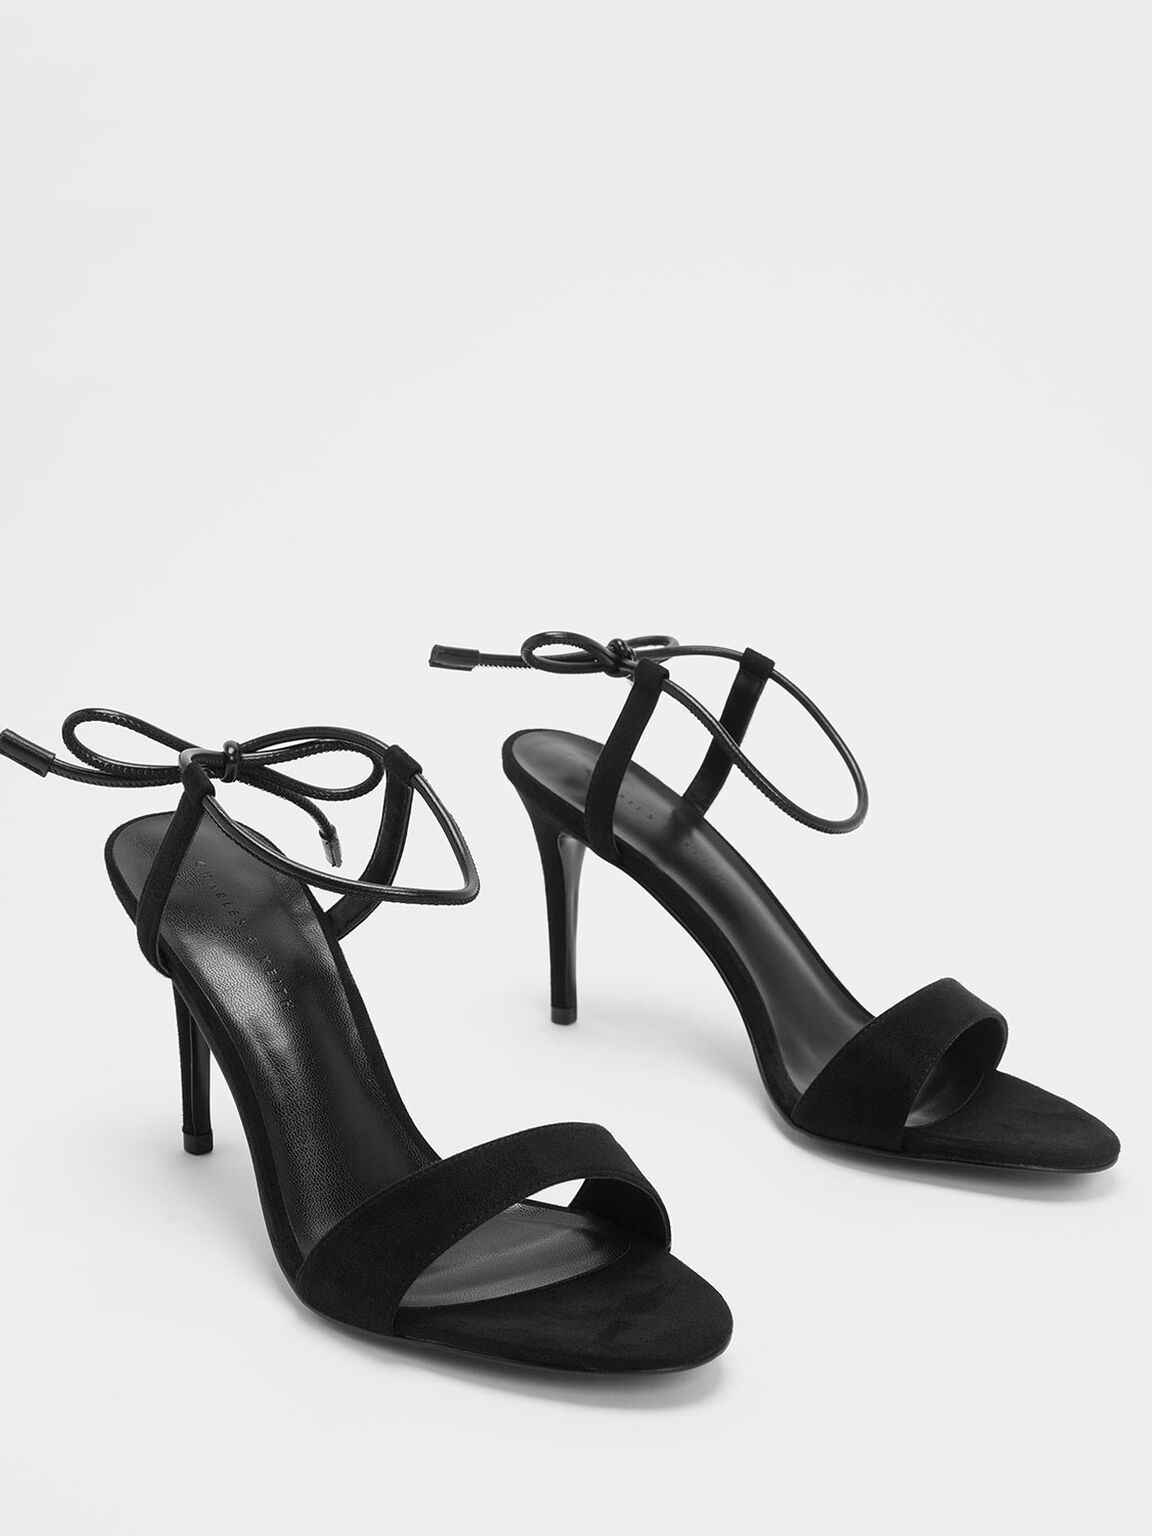 Ankle Tie Stiletto Sandals, Black, hi-res